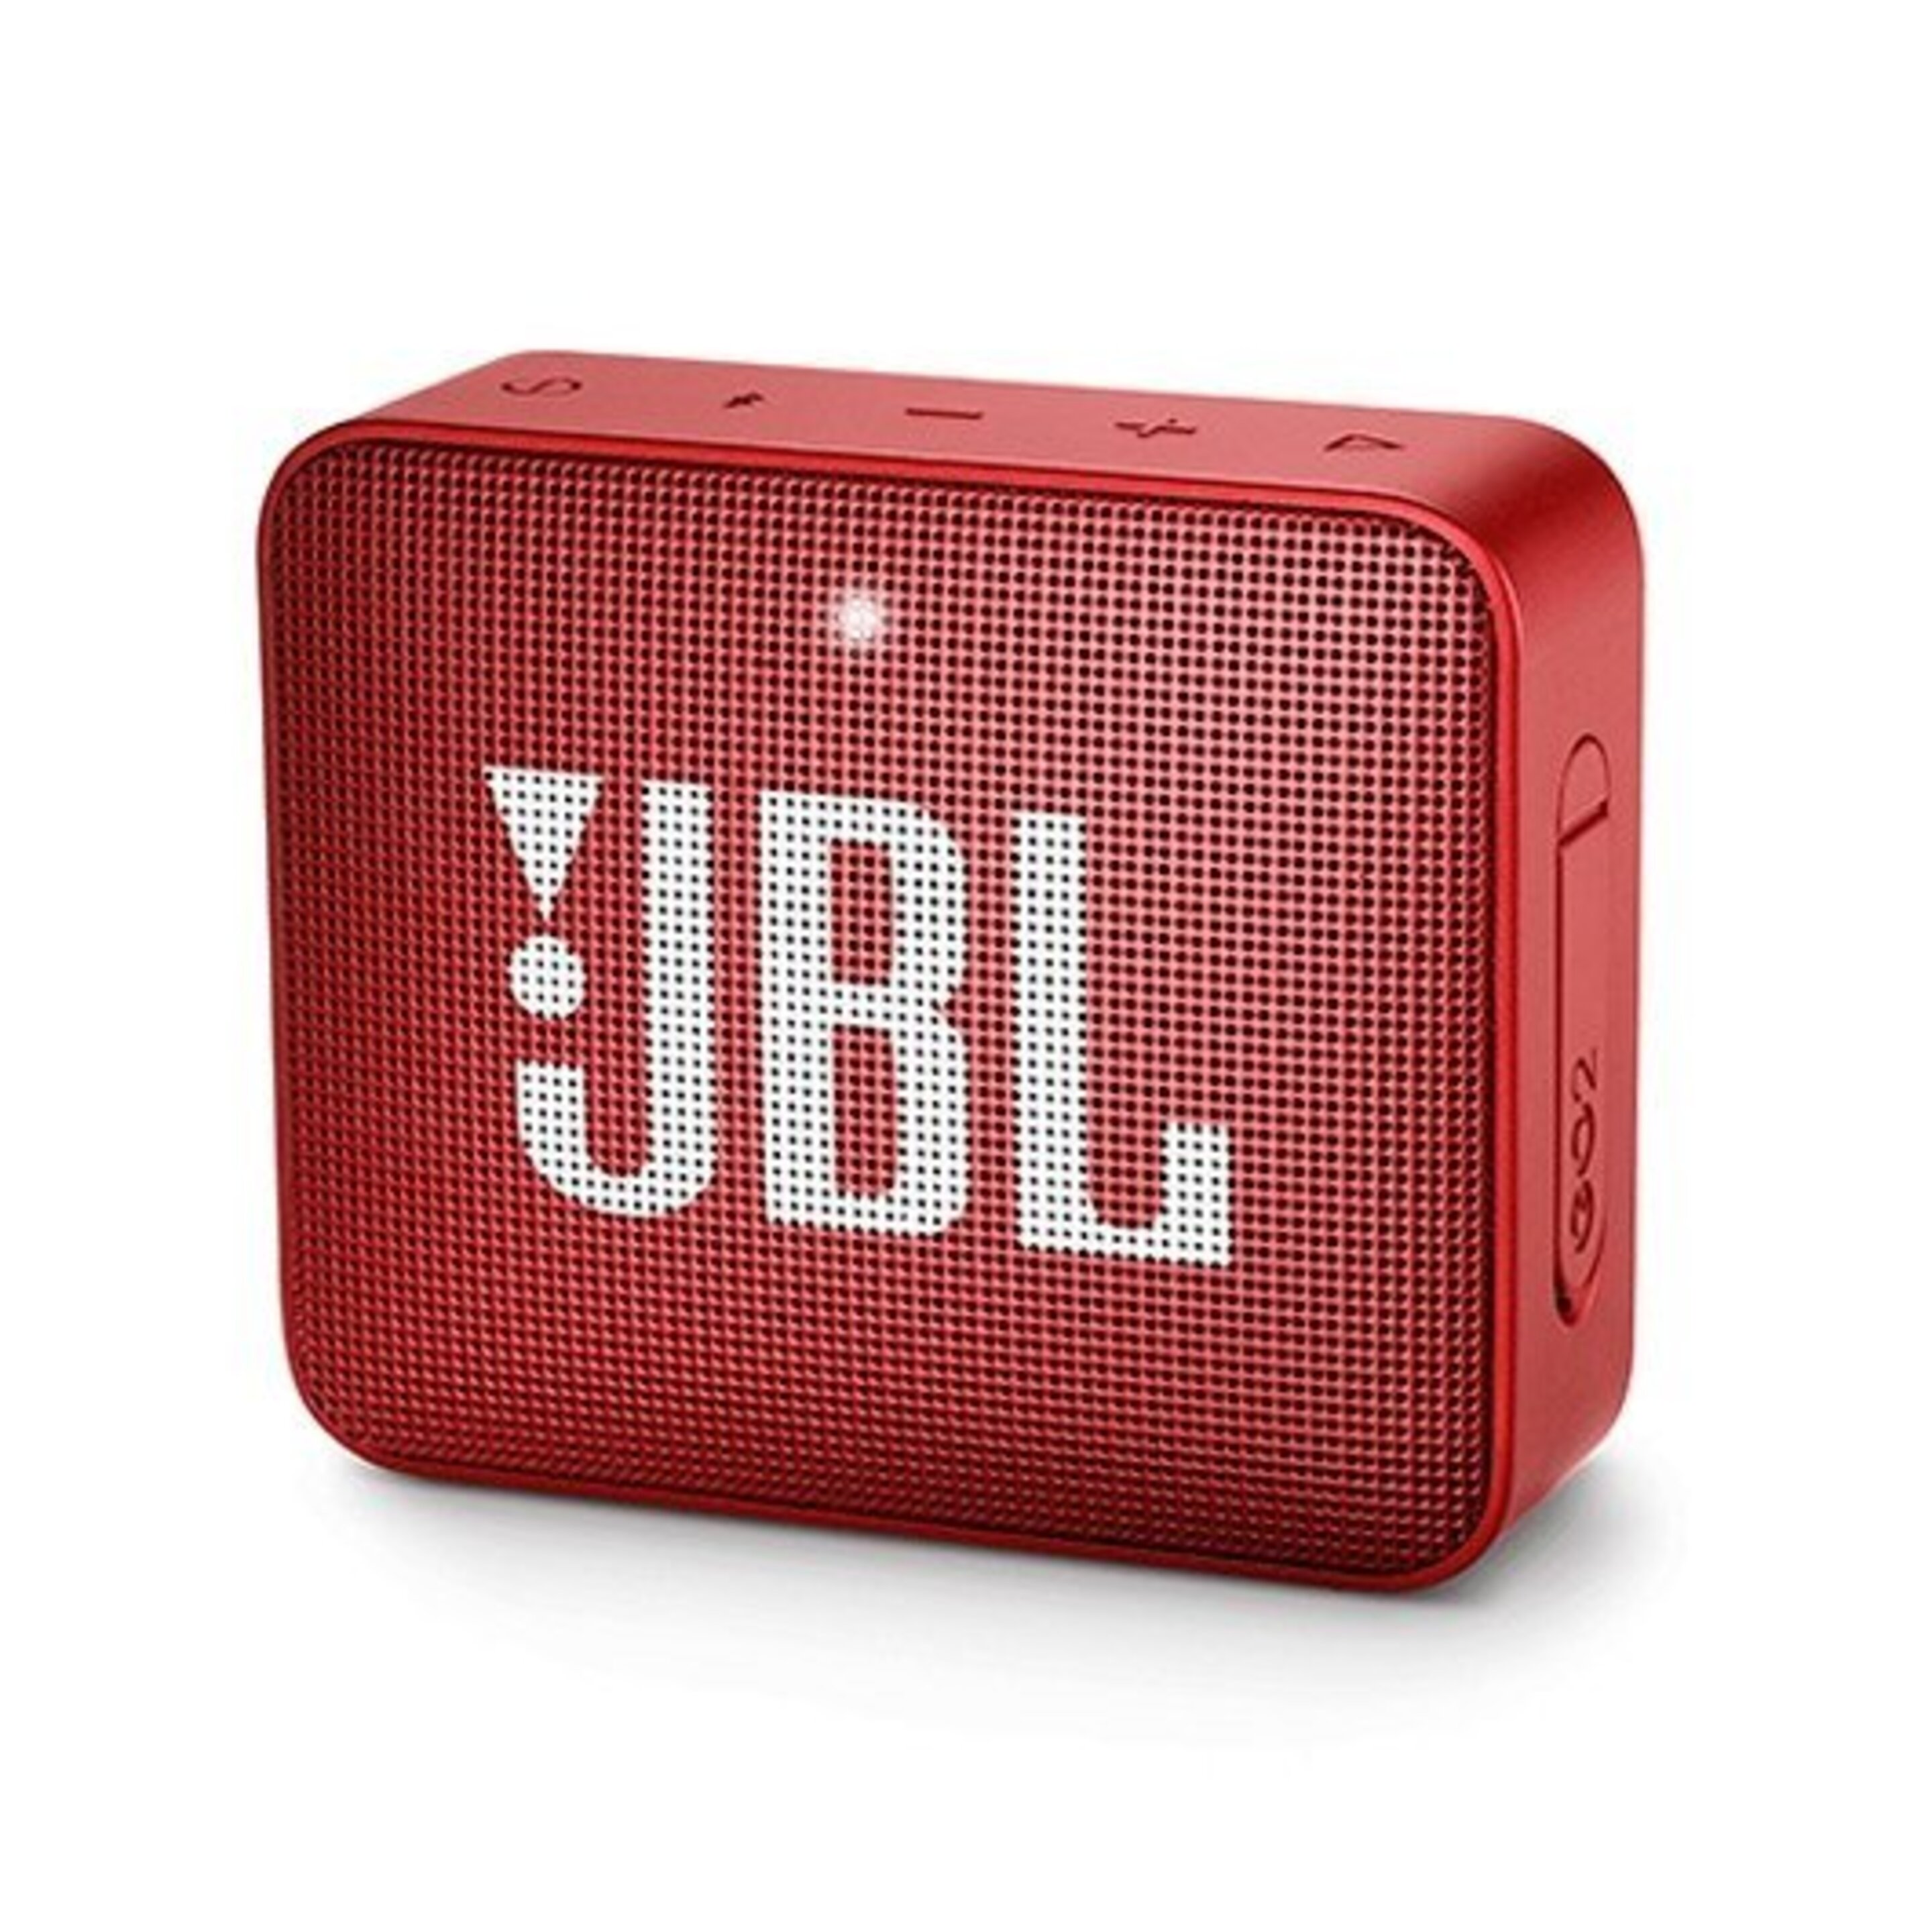 Altavoz Monofónico Portátil Jbl Go 2 3 W - rojo - 